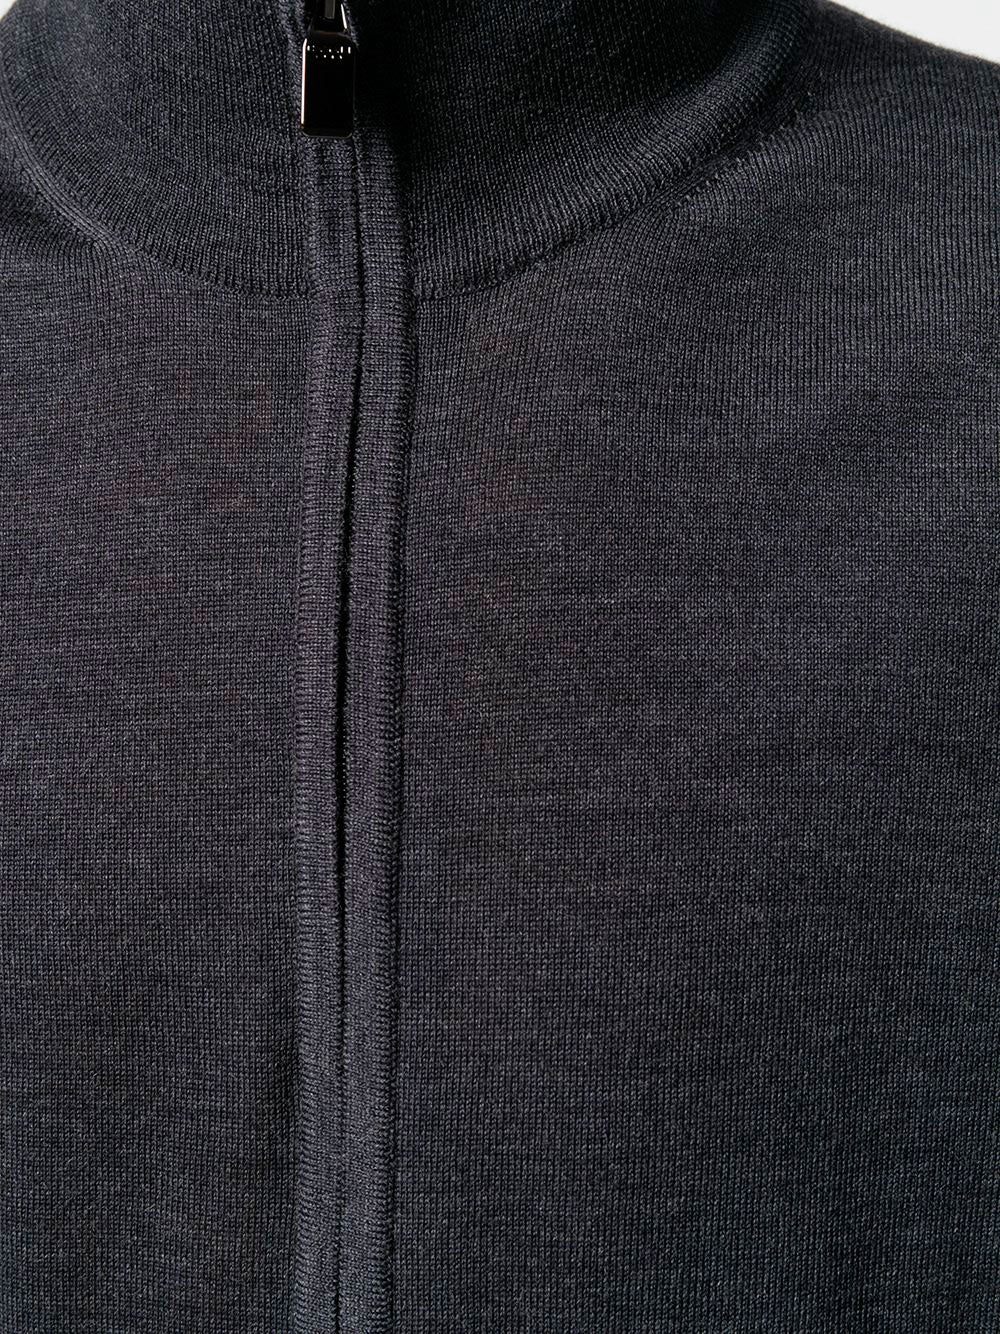 Zip-front long-sleeve cardigan